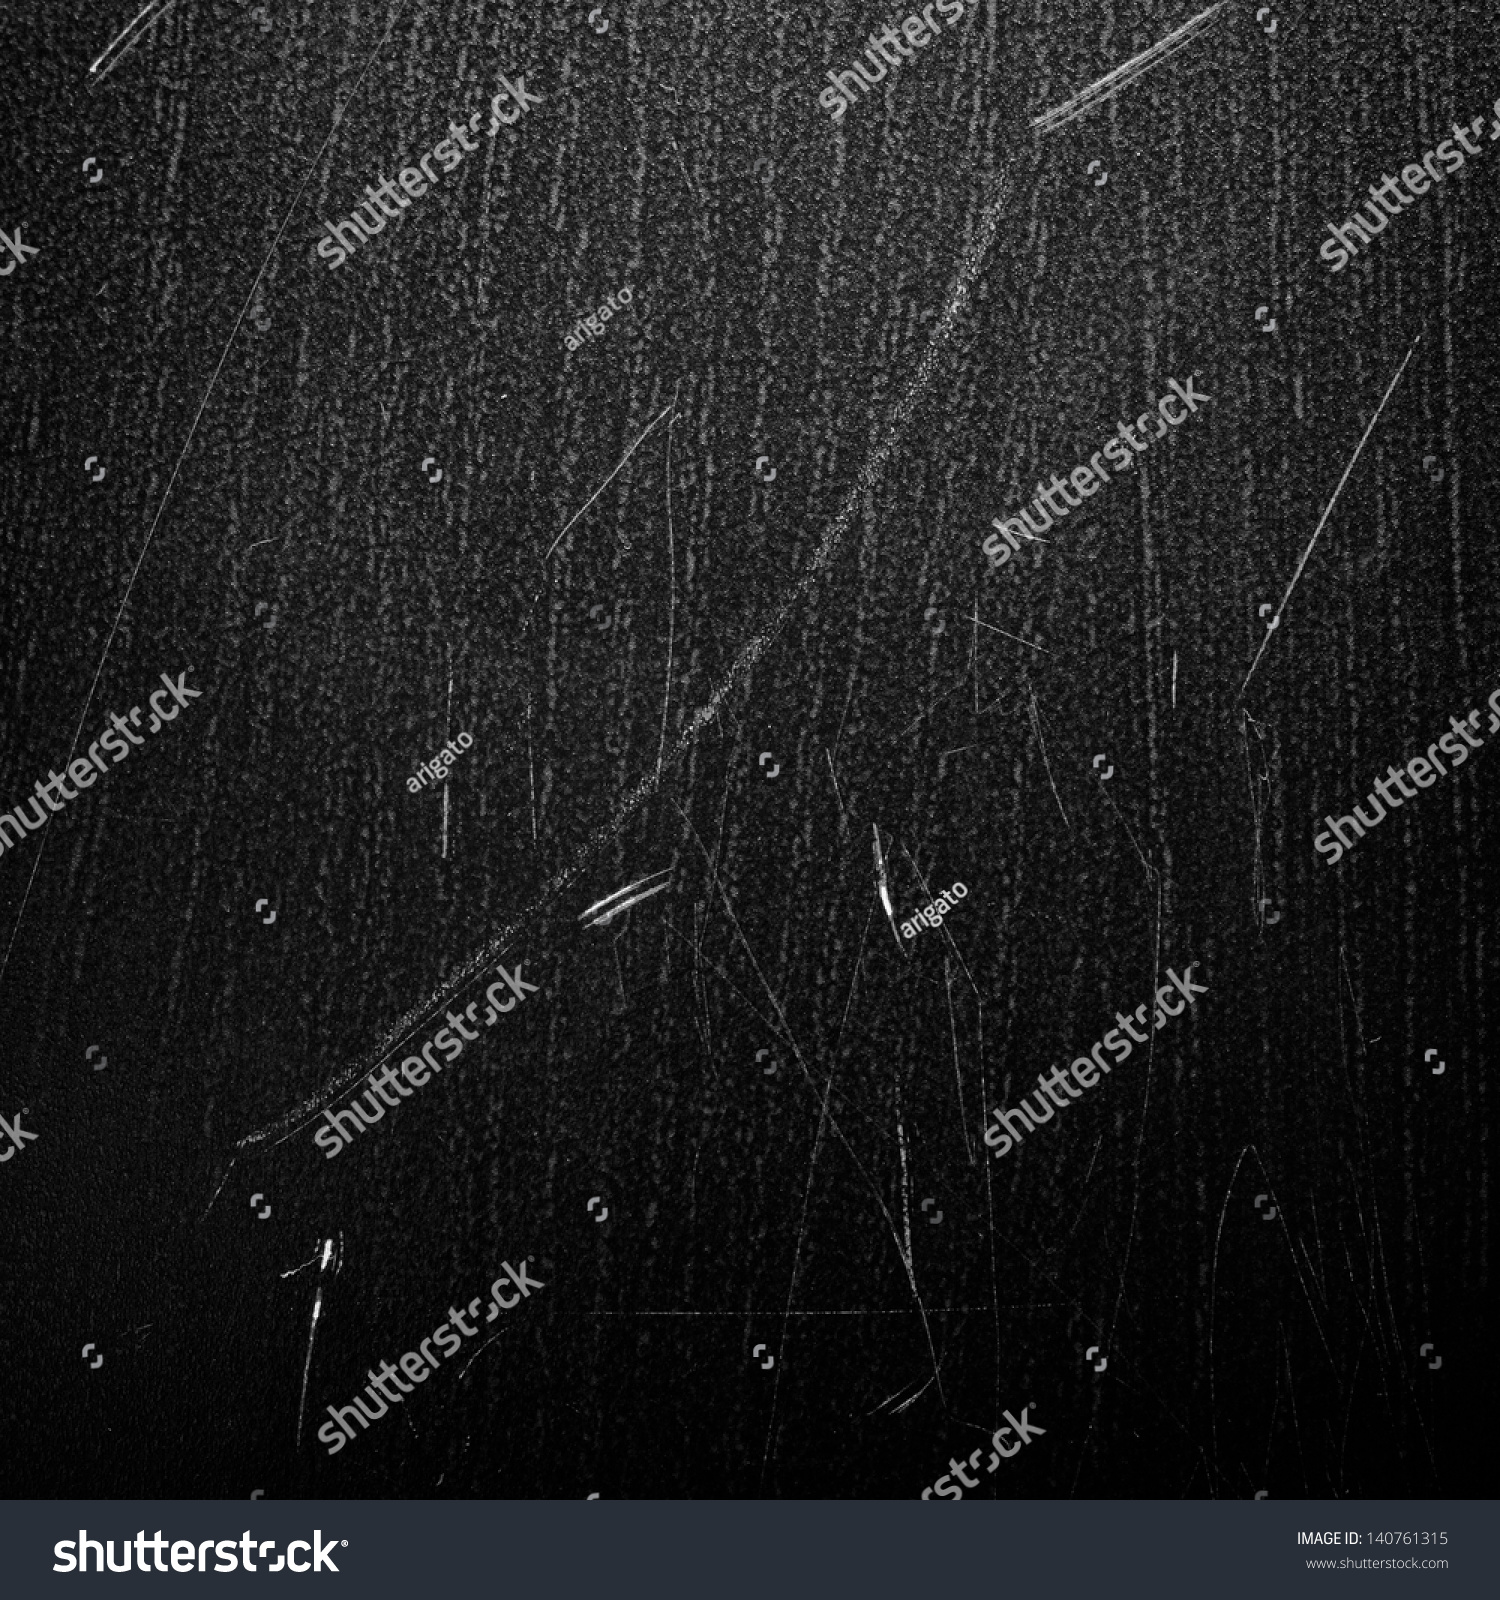 Black Scratchy Background Stock Photo 140761315 : Shutterstock